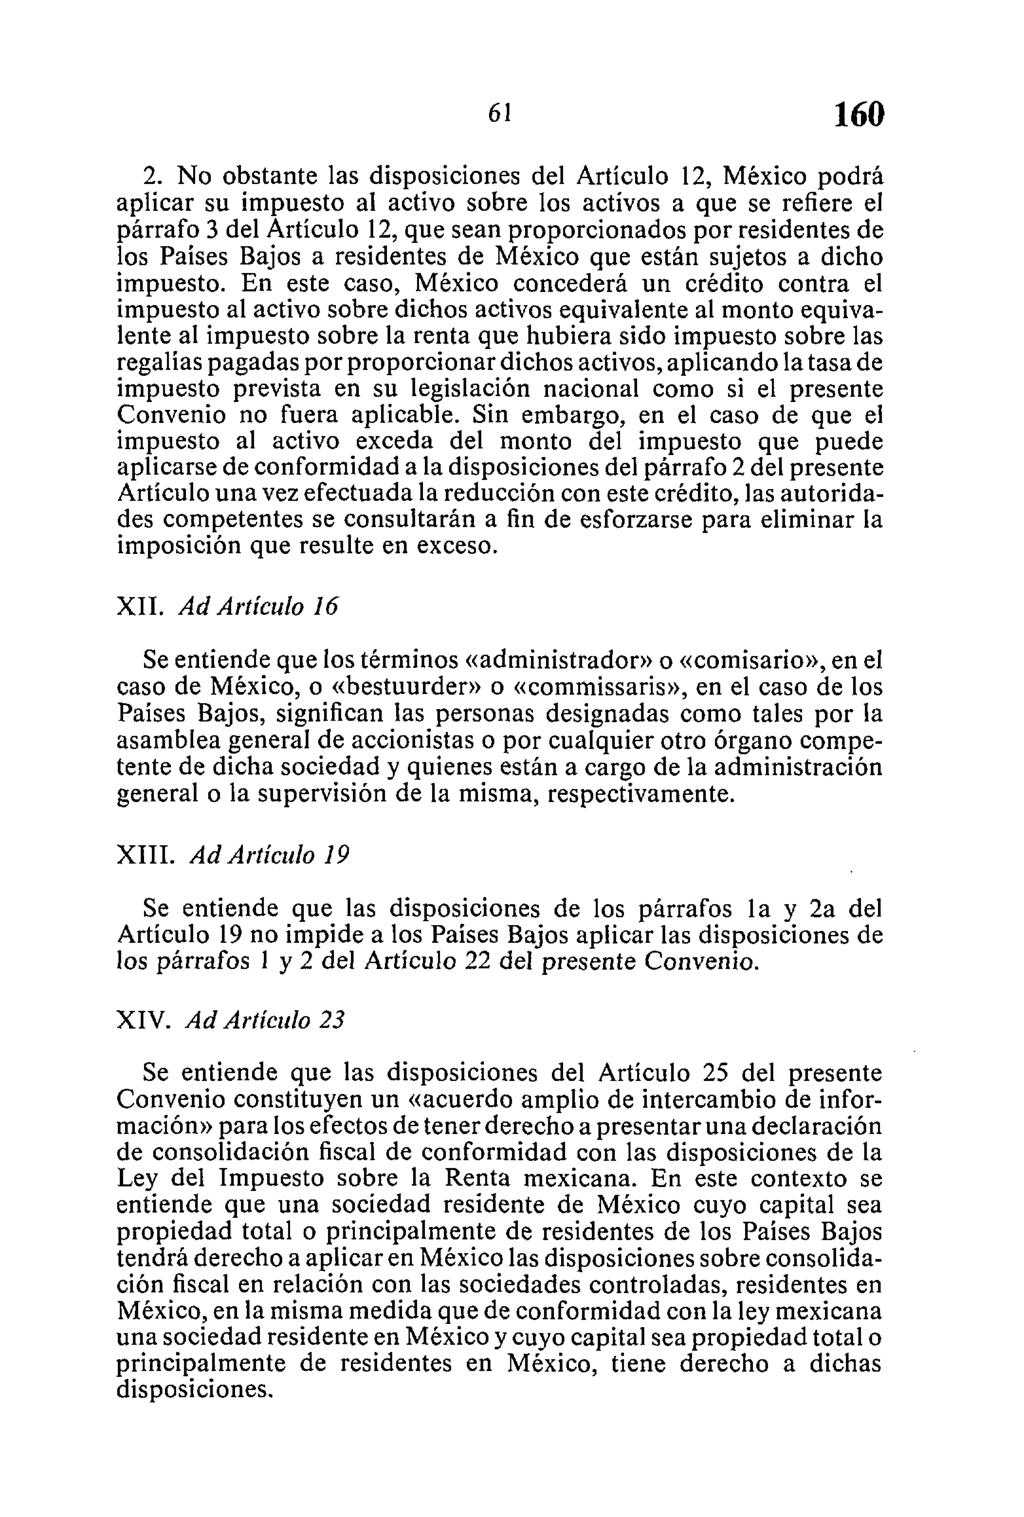 2. No obstante las disposiciones del Artículo 12, México podrá aplicar su impuesto al activo sobre los activos a que se refiere el párrafo 3 del Artículo 12, que sean proporcionados por residentes de